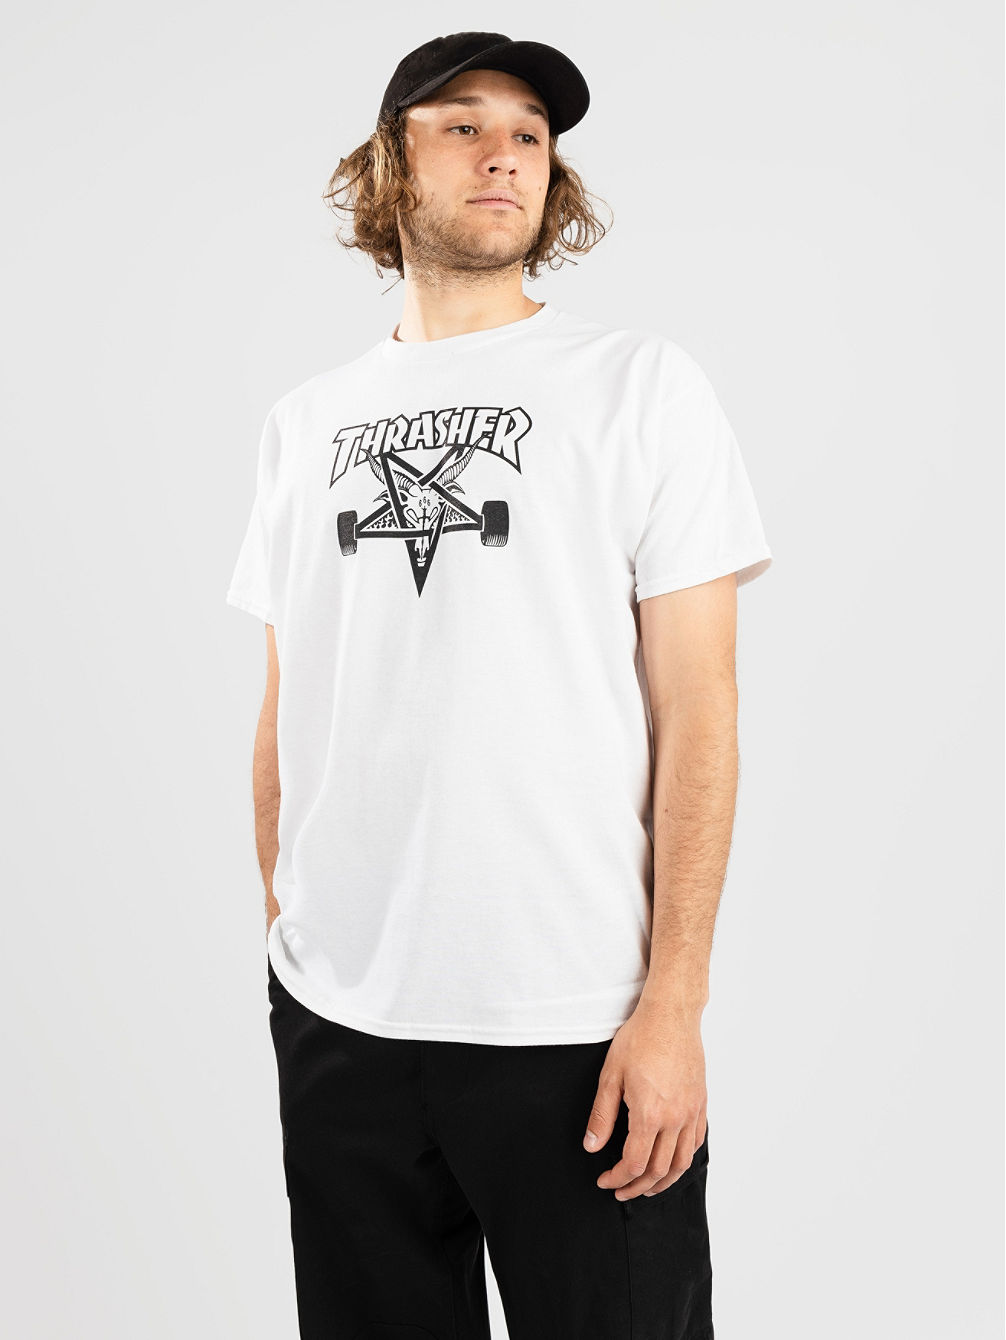 Skate Goat T-Shirt